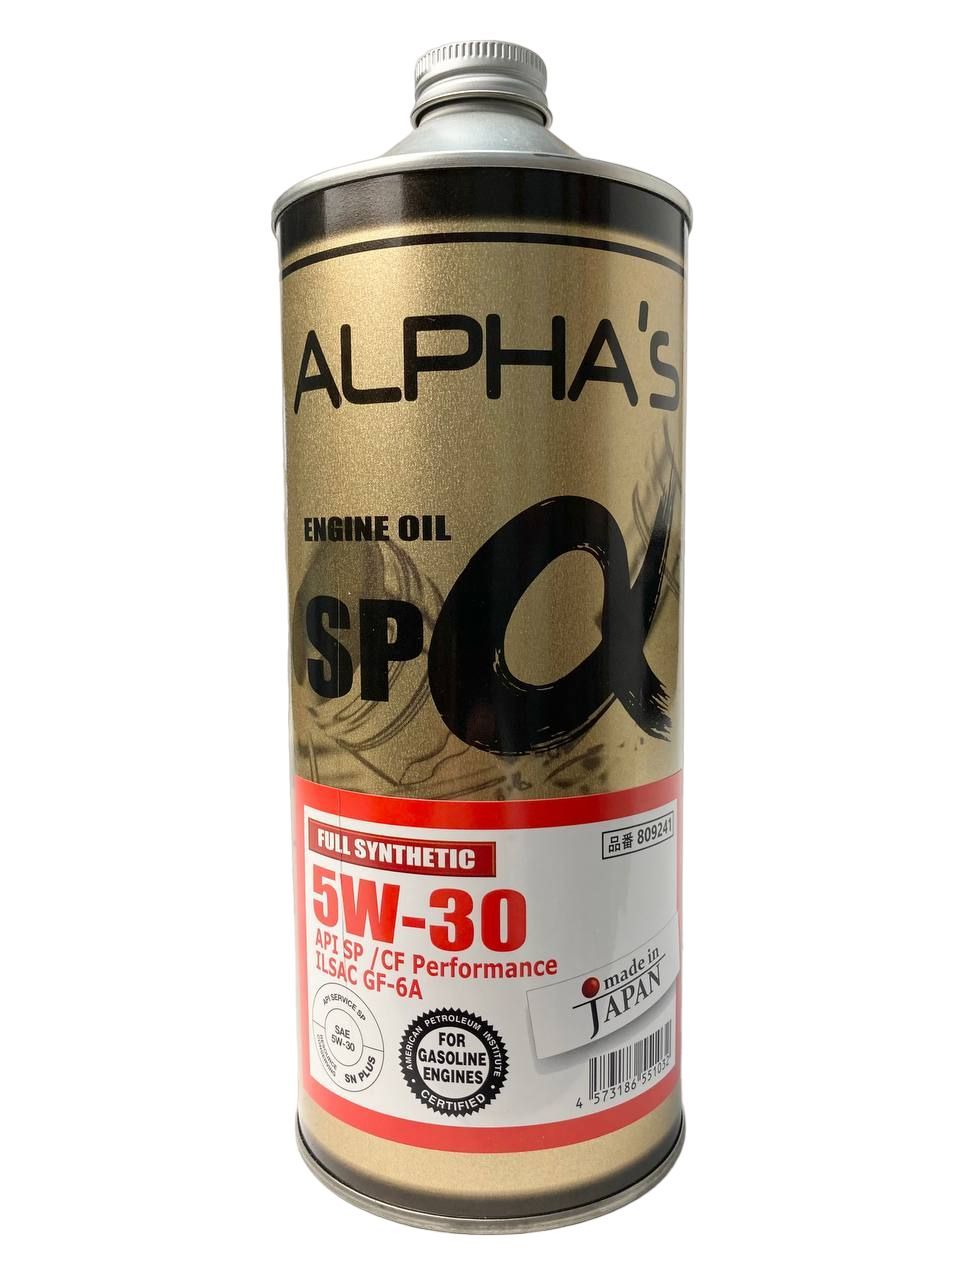 Alphas 5w30. Alphas 5w-30 20л SP/CF gf-6a 20l. Alphas 809244 5w-30 20л SP/CF gf-6a 20l. 5w-40 20л SP/CF Alphas 809546.